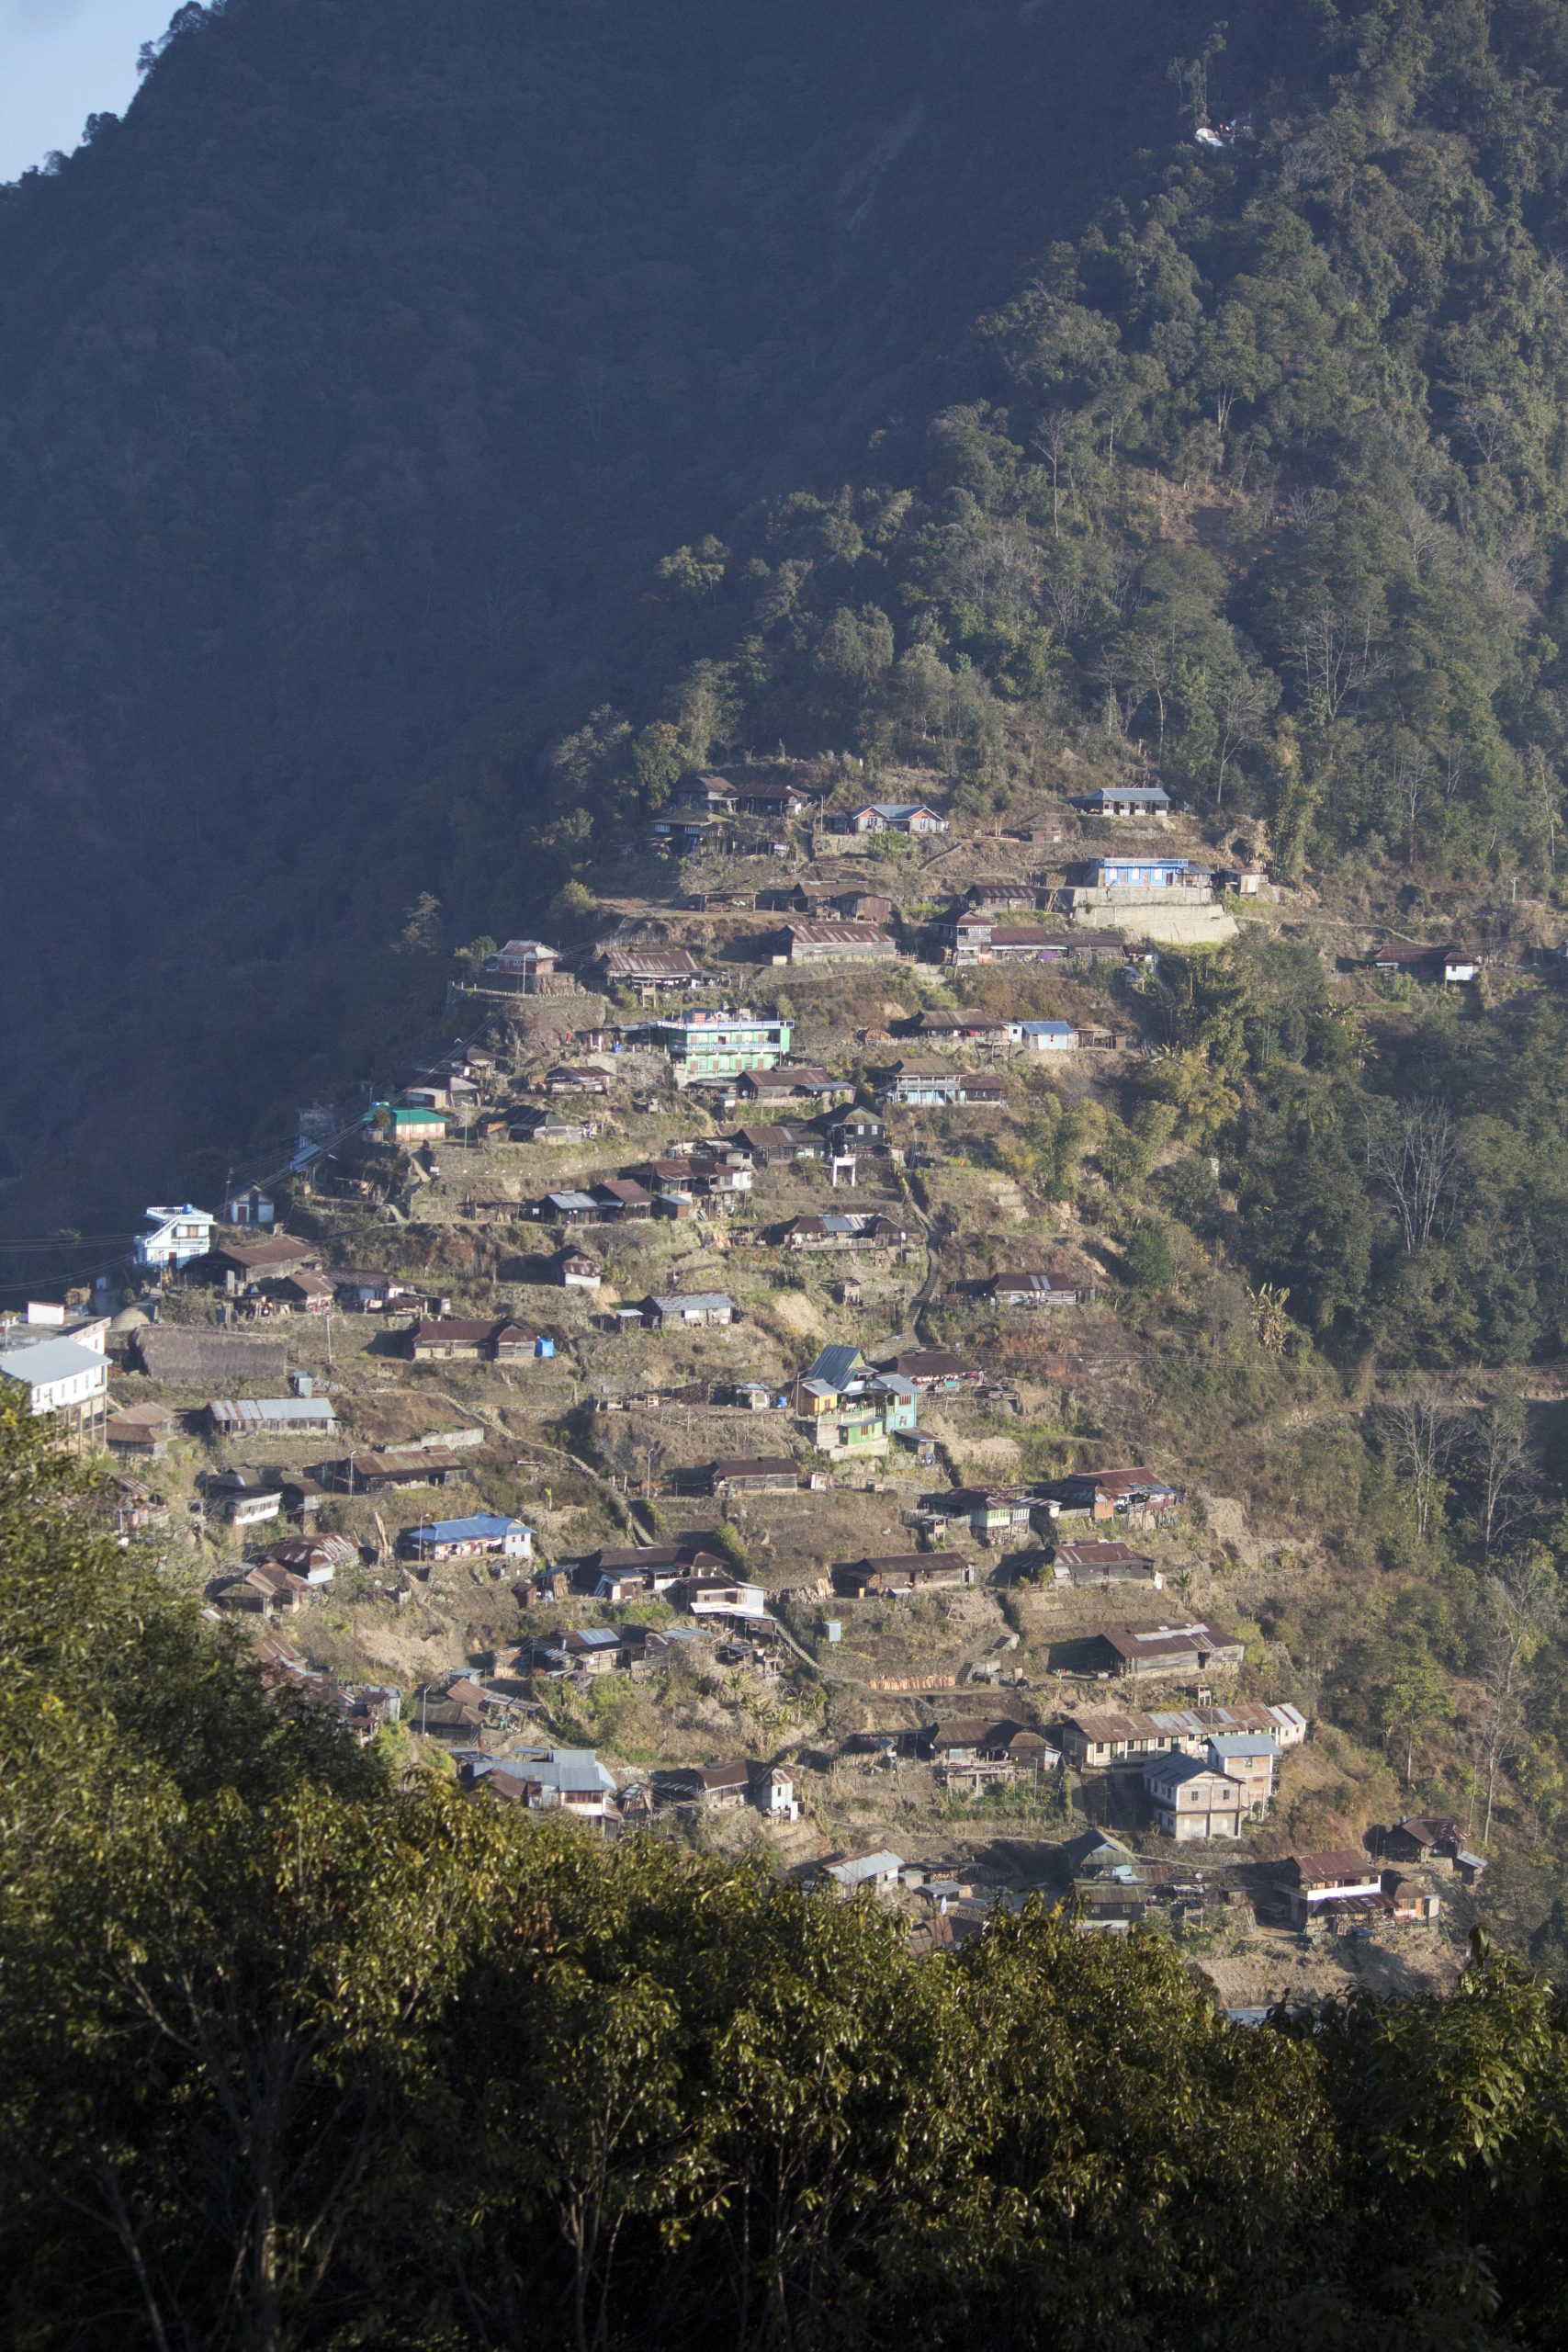 Benreu village in Nagaland